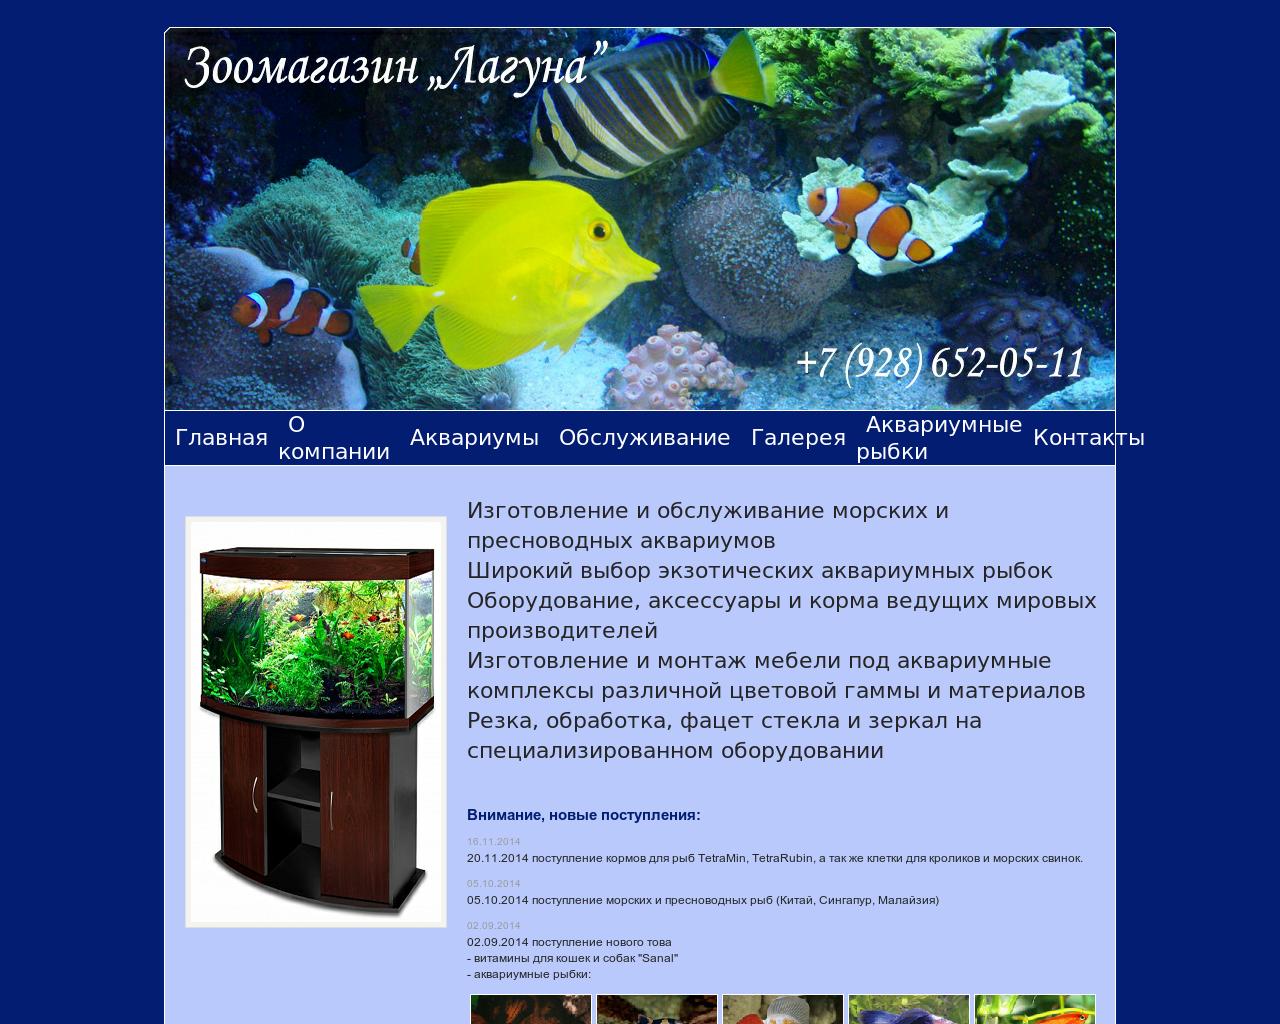 Изображение сайта aquarium-laguna.ru в разрешении 1280x1024